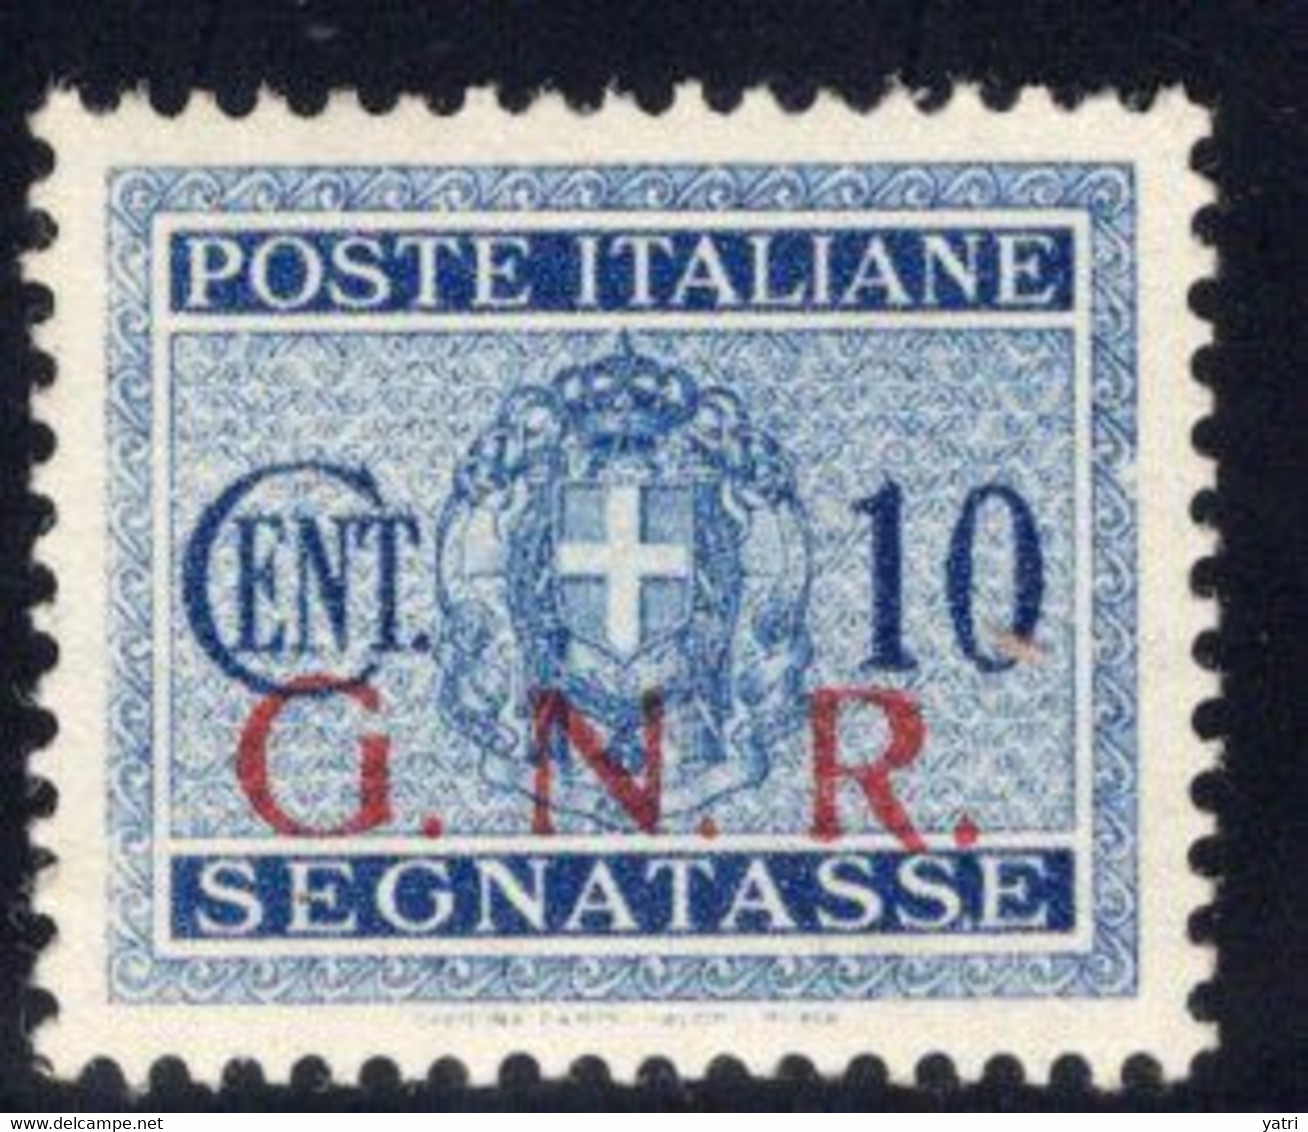 Repubblica Sociale - Segnatasse 10 Cent. GNR Brescia ** MNH - Postage Due